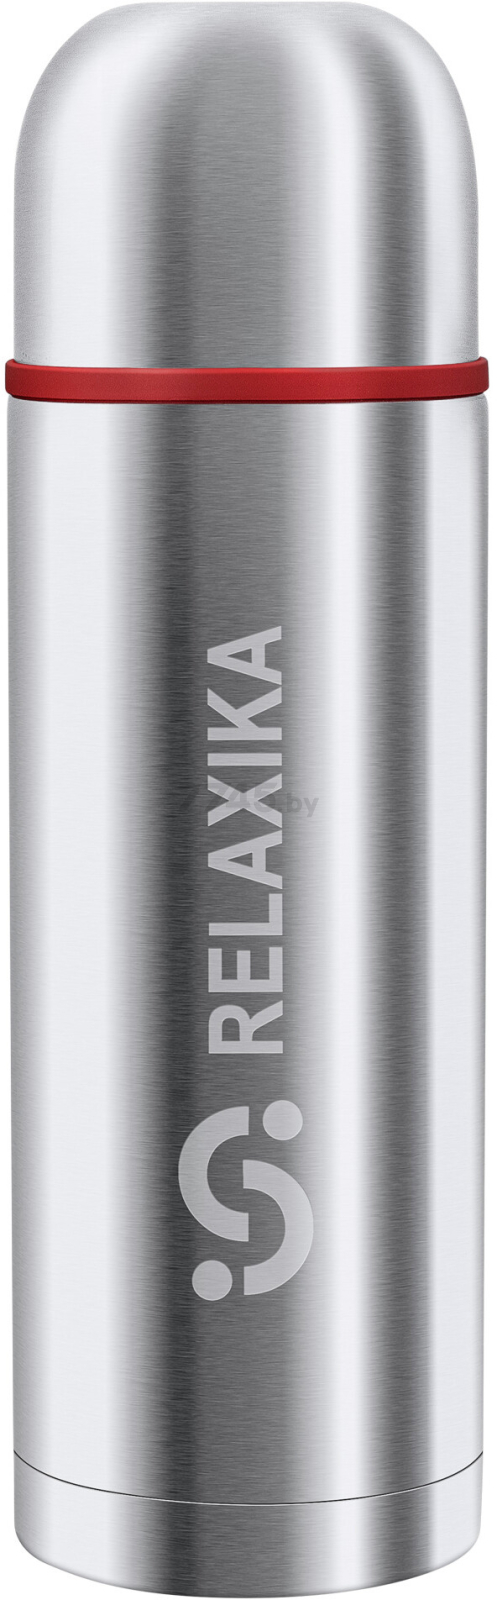 Термос RELAXIKA 102-1000-1P стальной